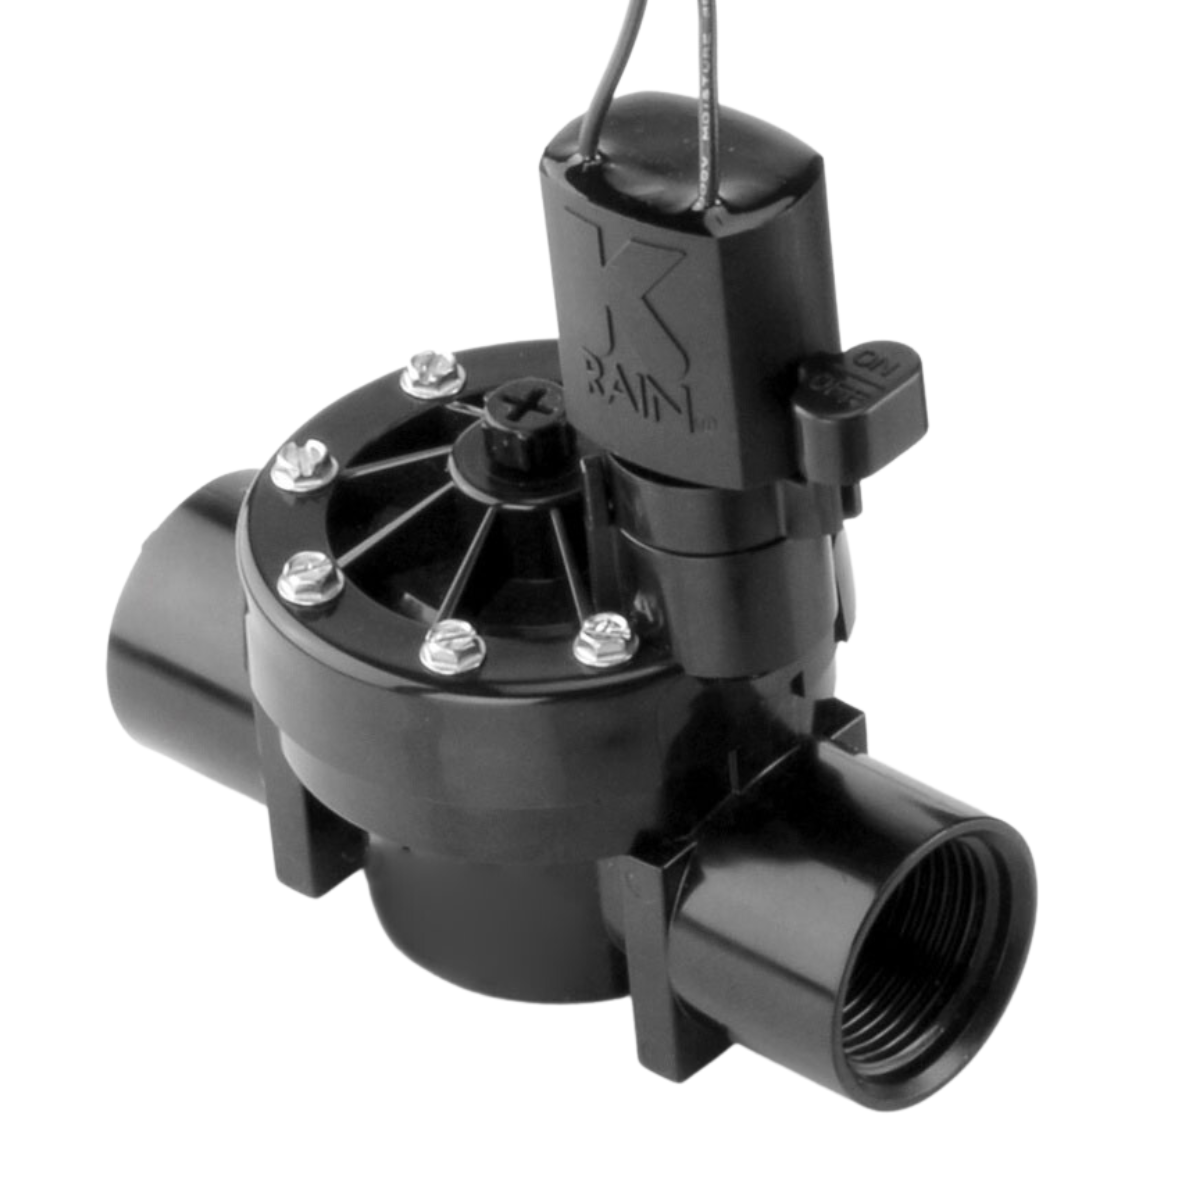 Válvula Elétrica Solenoide Pro 150 Irrigação 1" Bsp K-rain